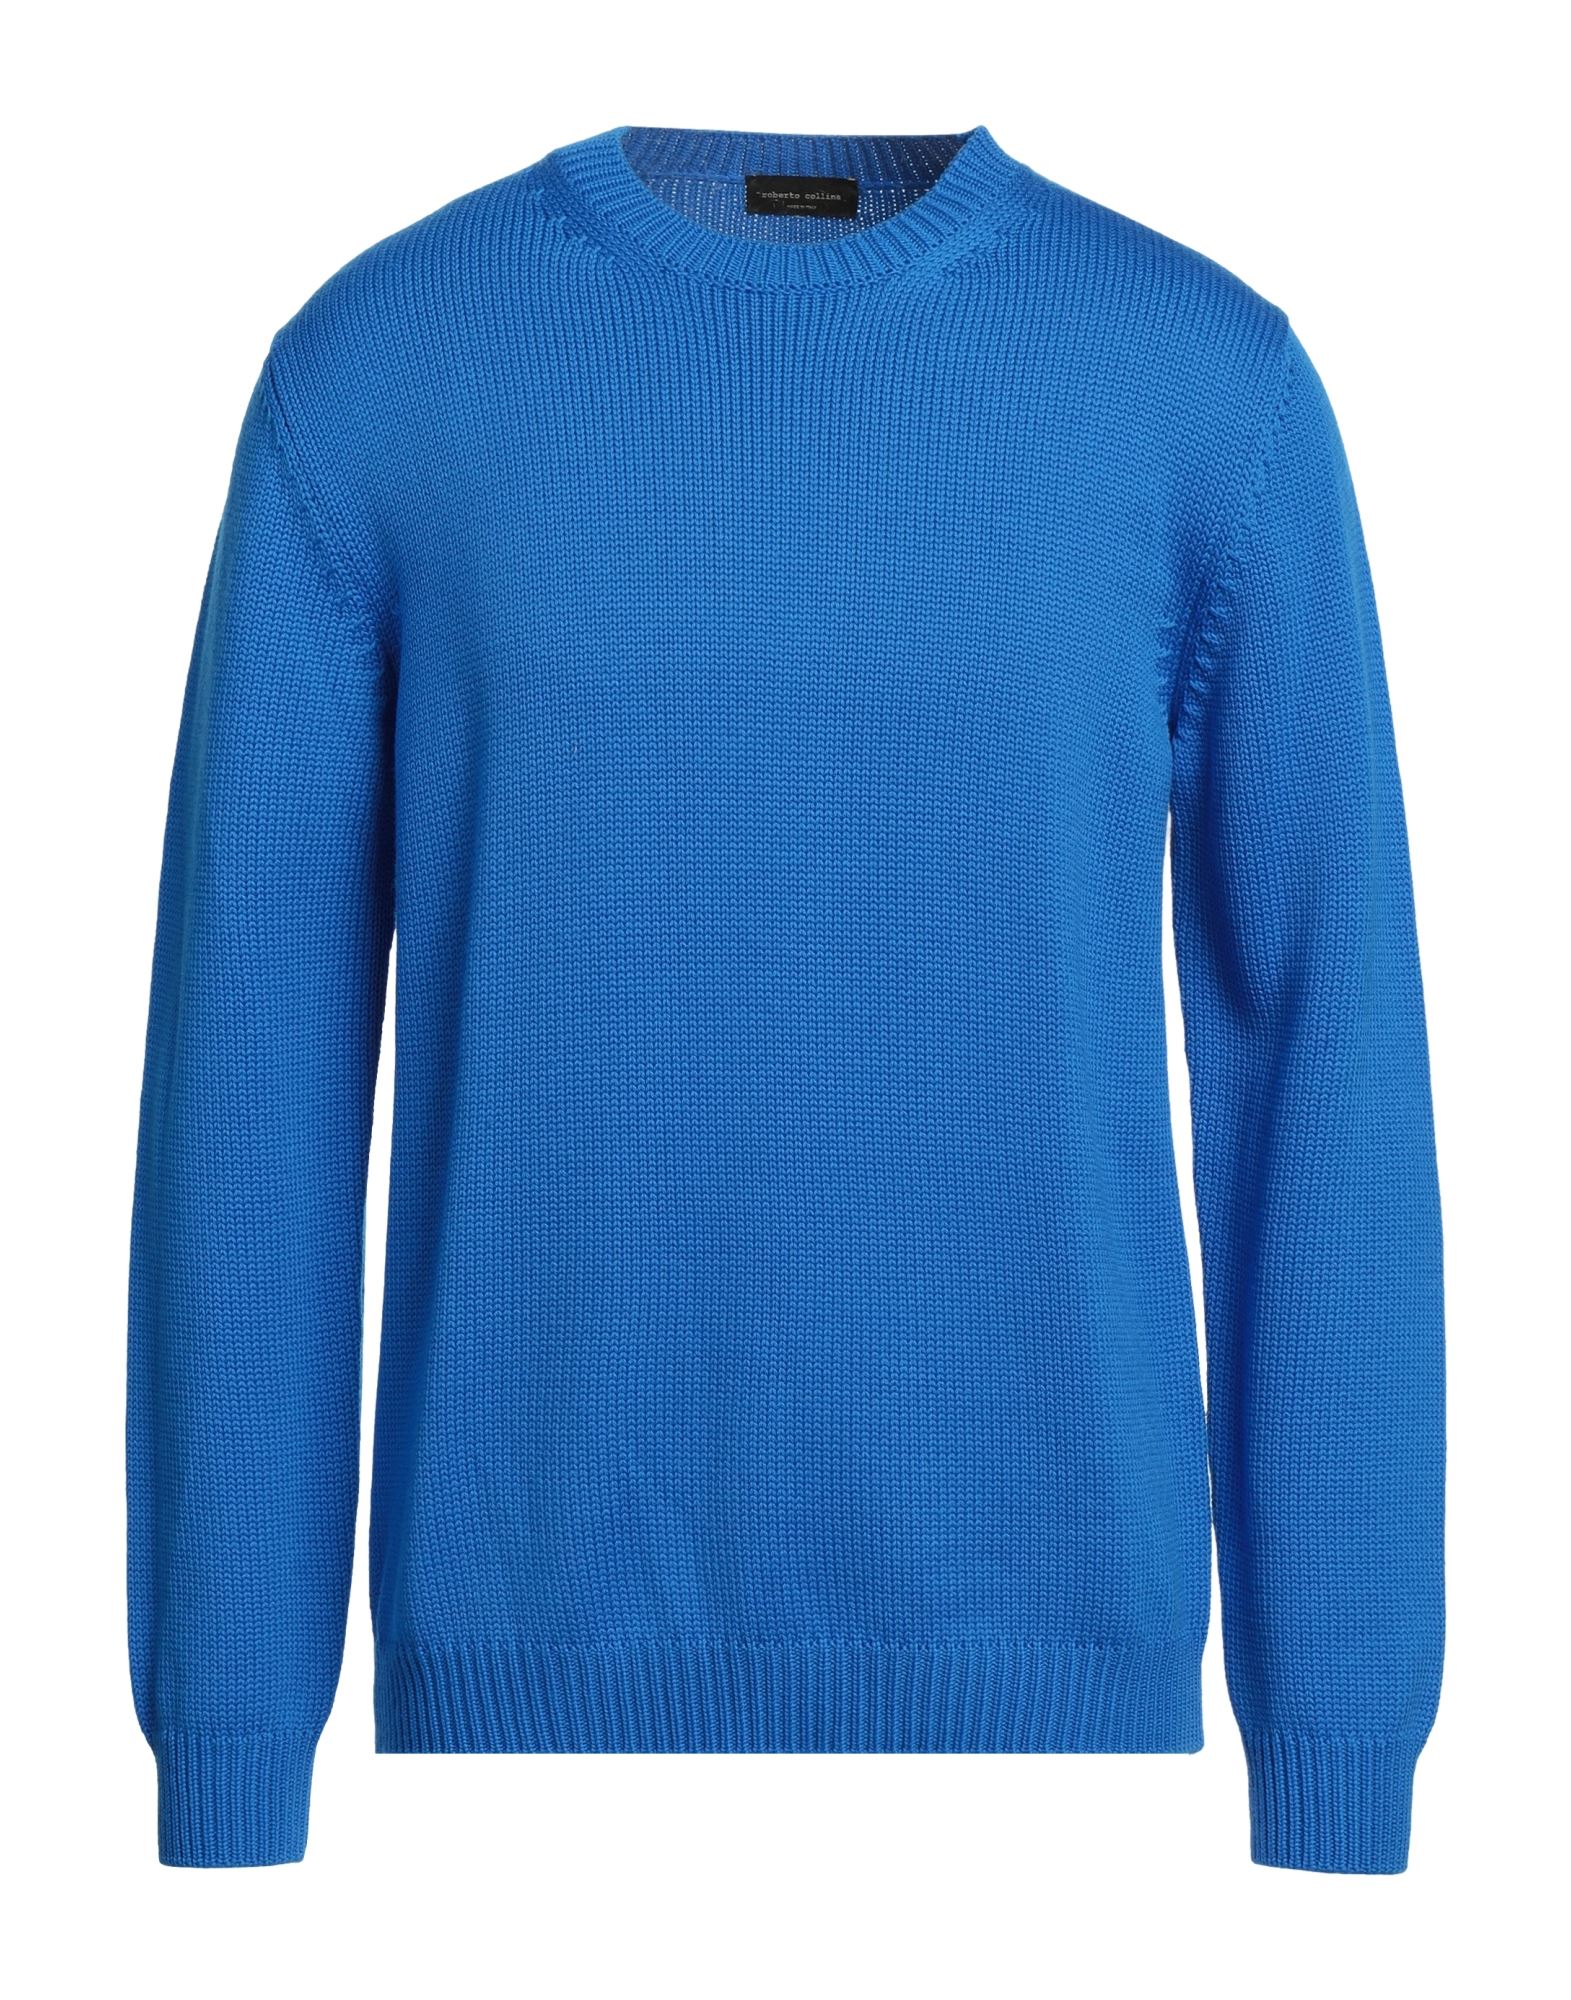 Roberto Collina Sweaters In Bright Blue